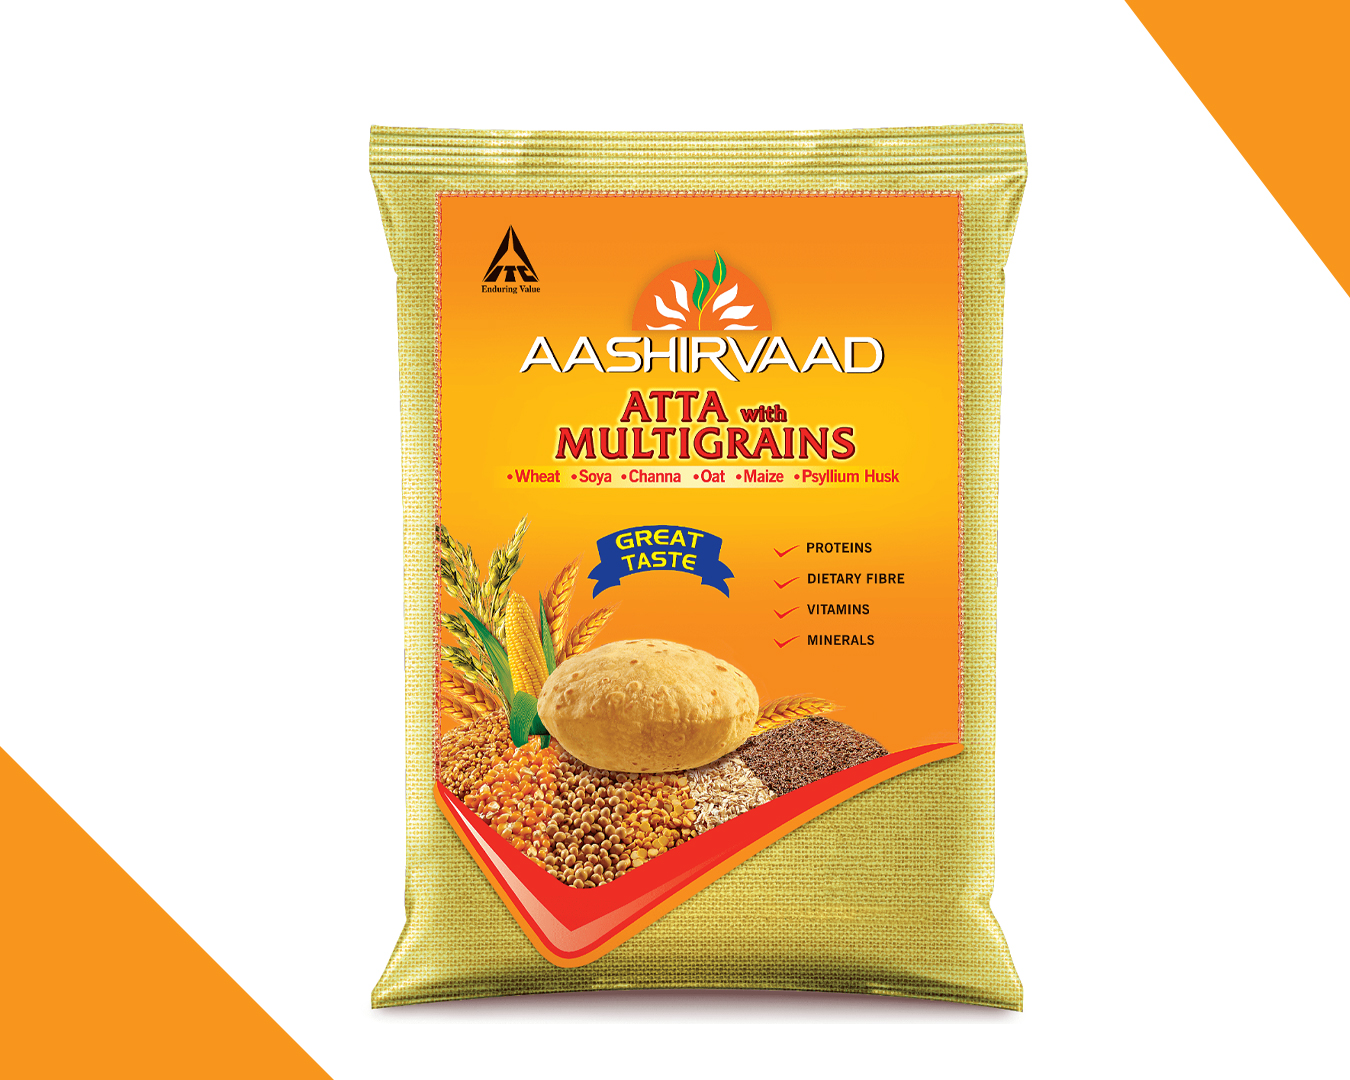 itc-products - Aashirvaad-Aata